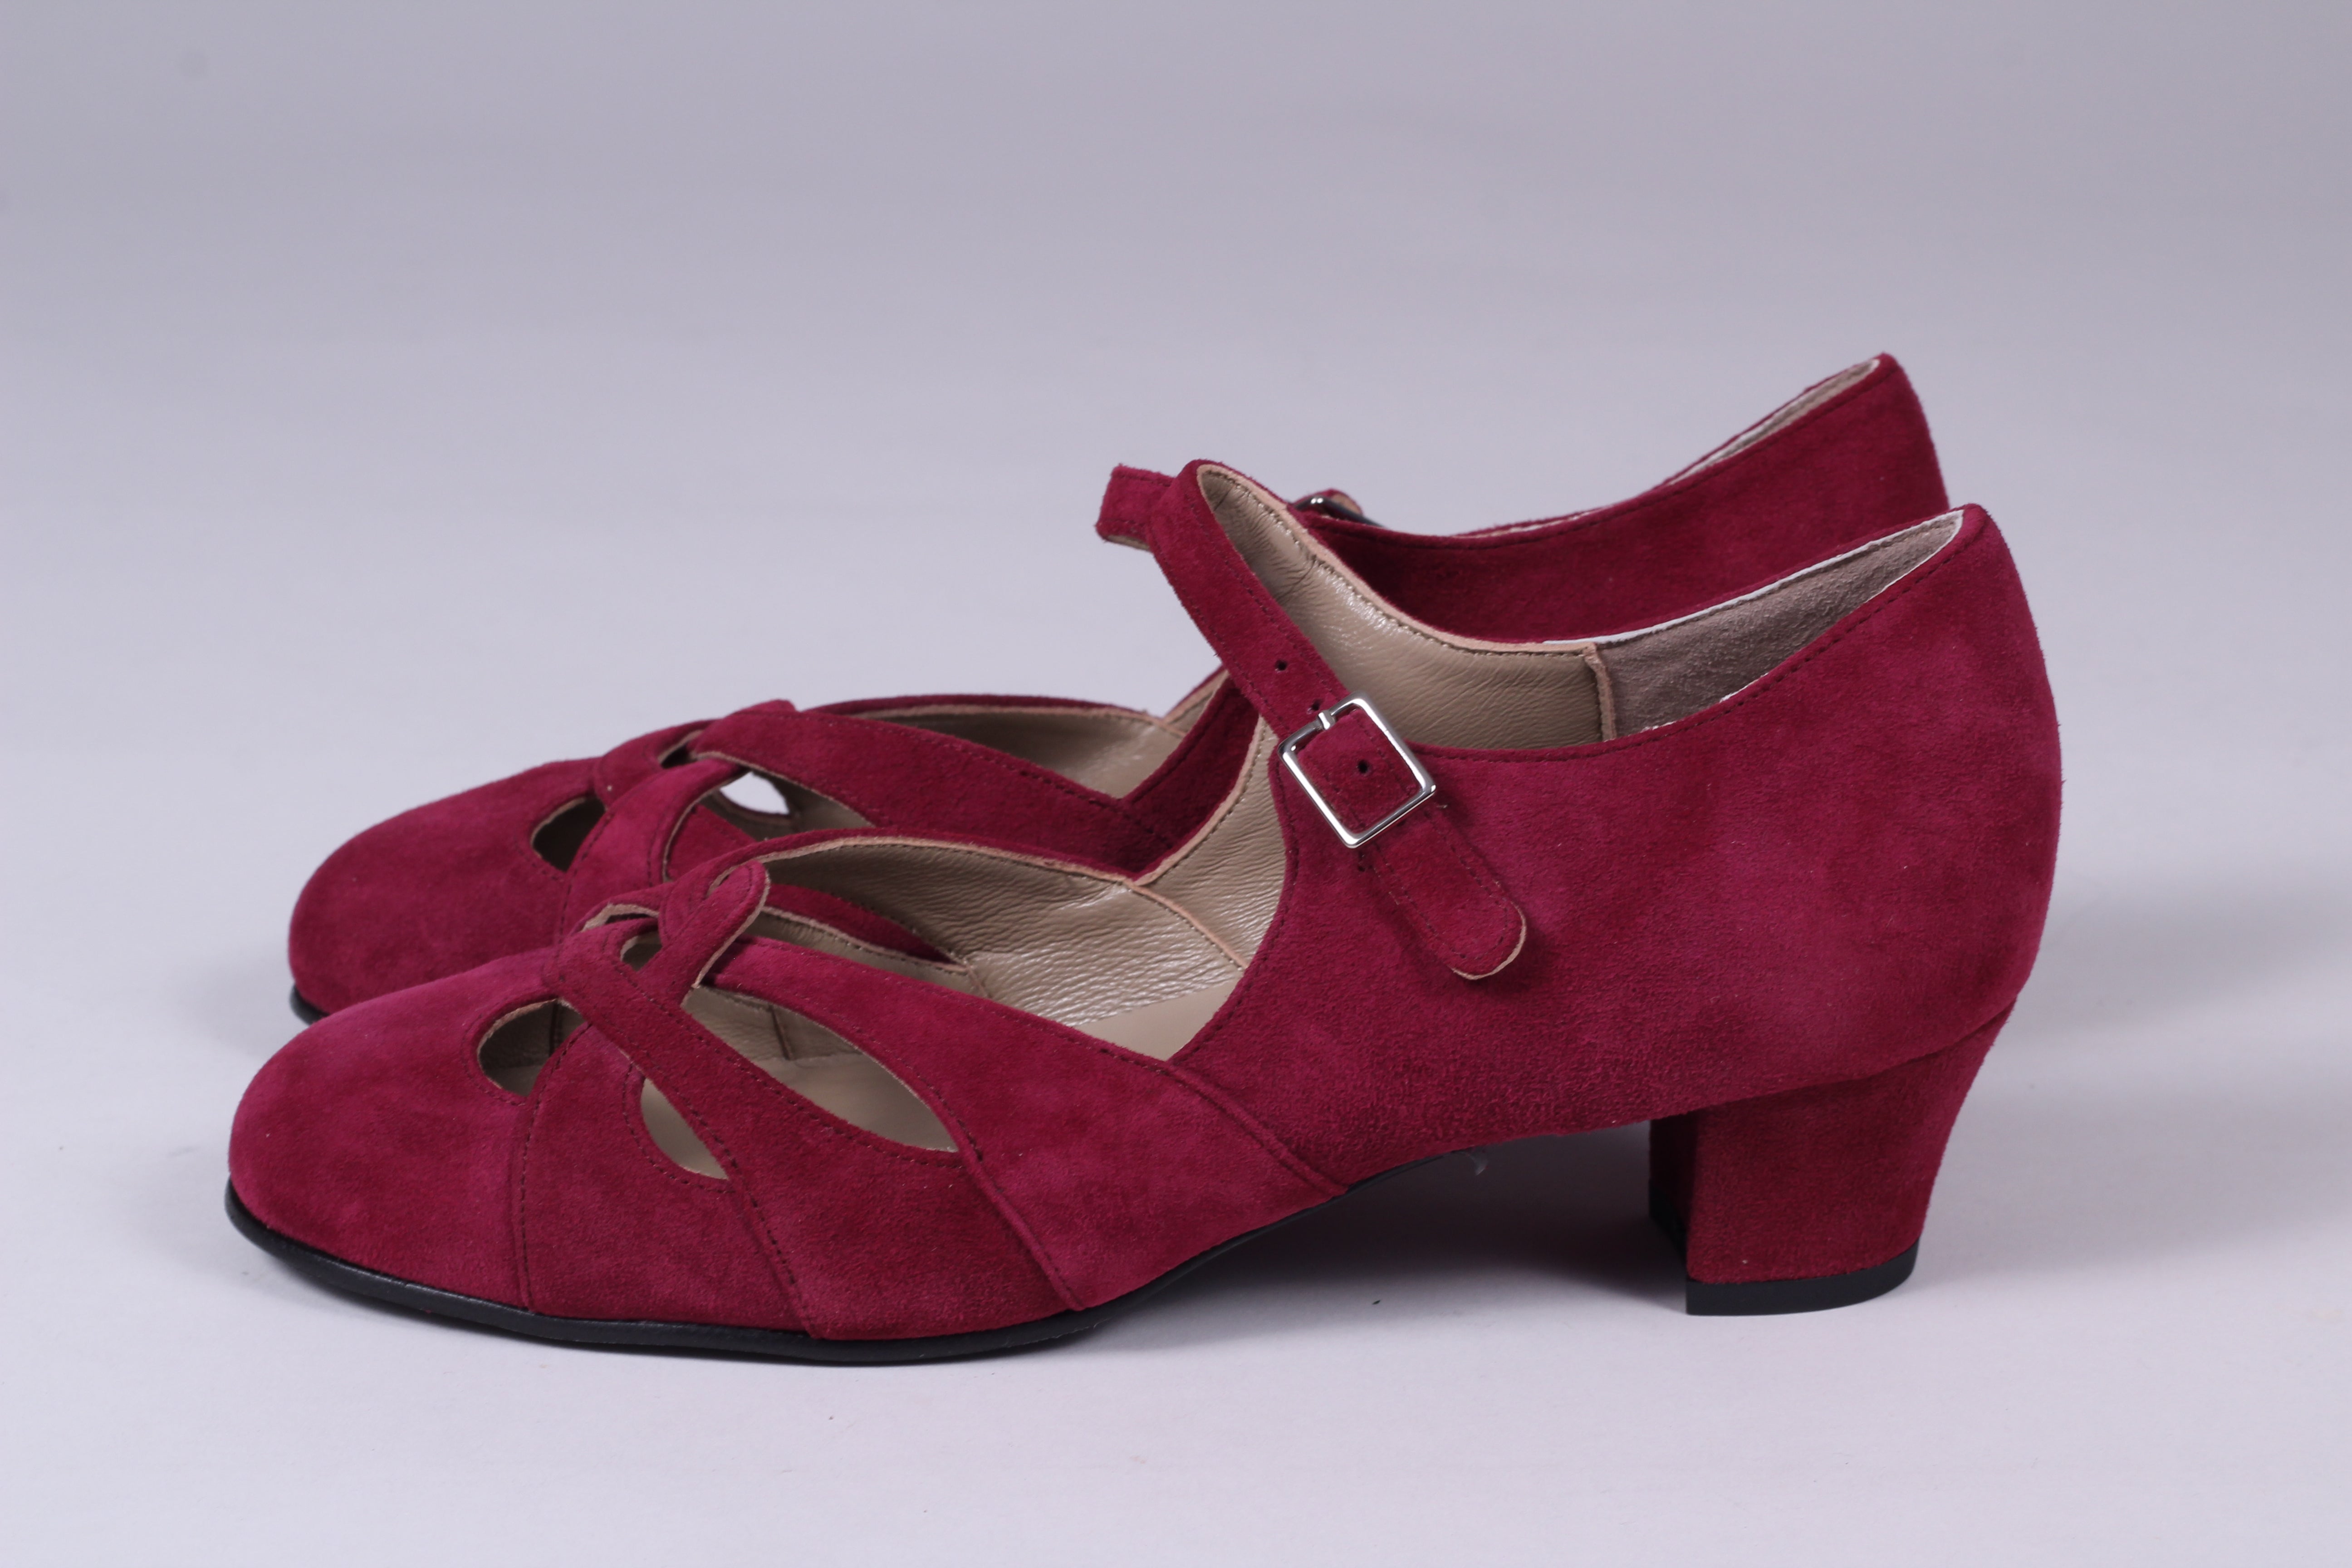 1930'er / 1940'er vintage style sandaler i ruskind - bordeaux rød - Ida